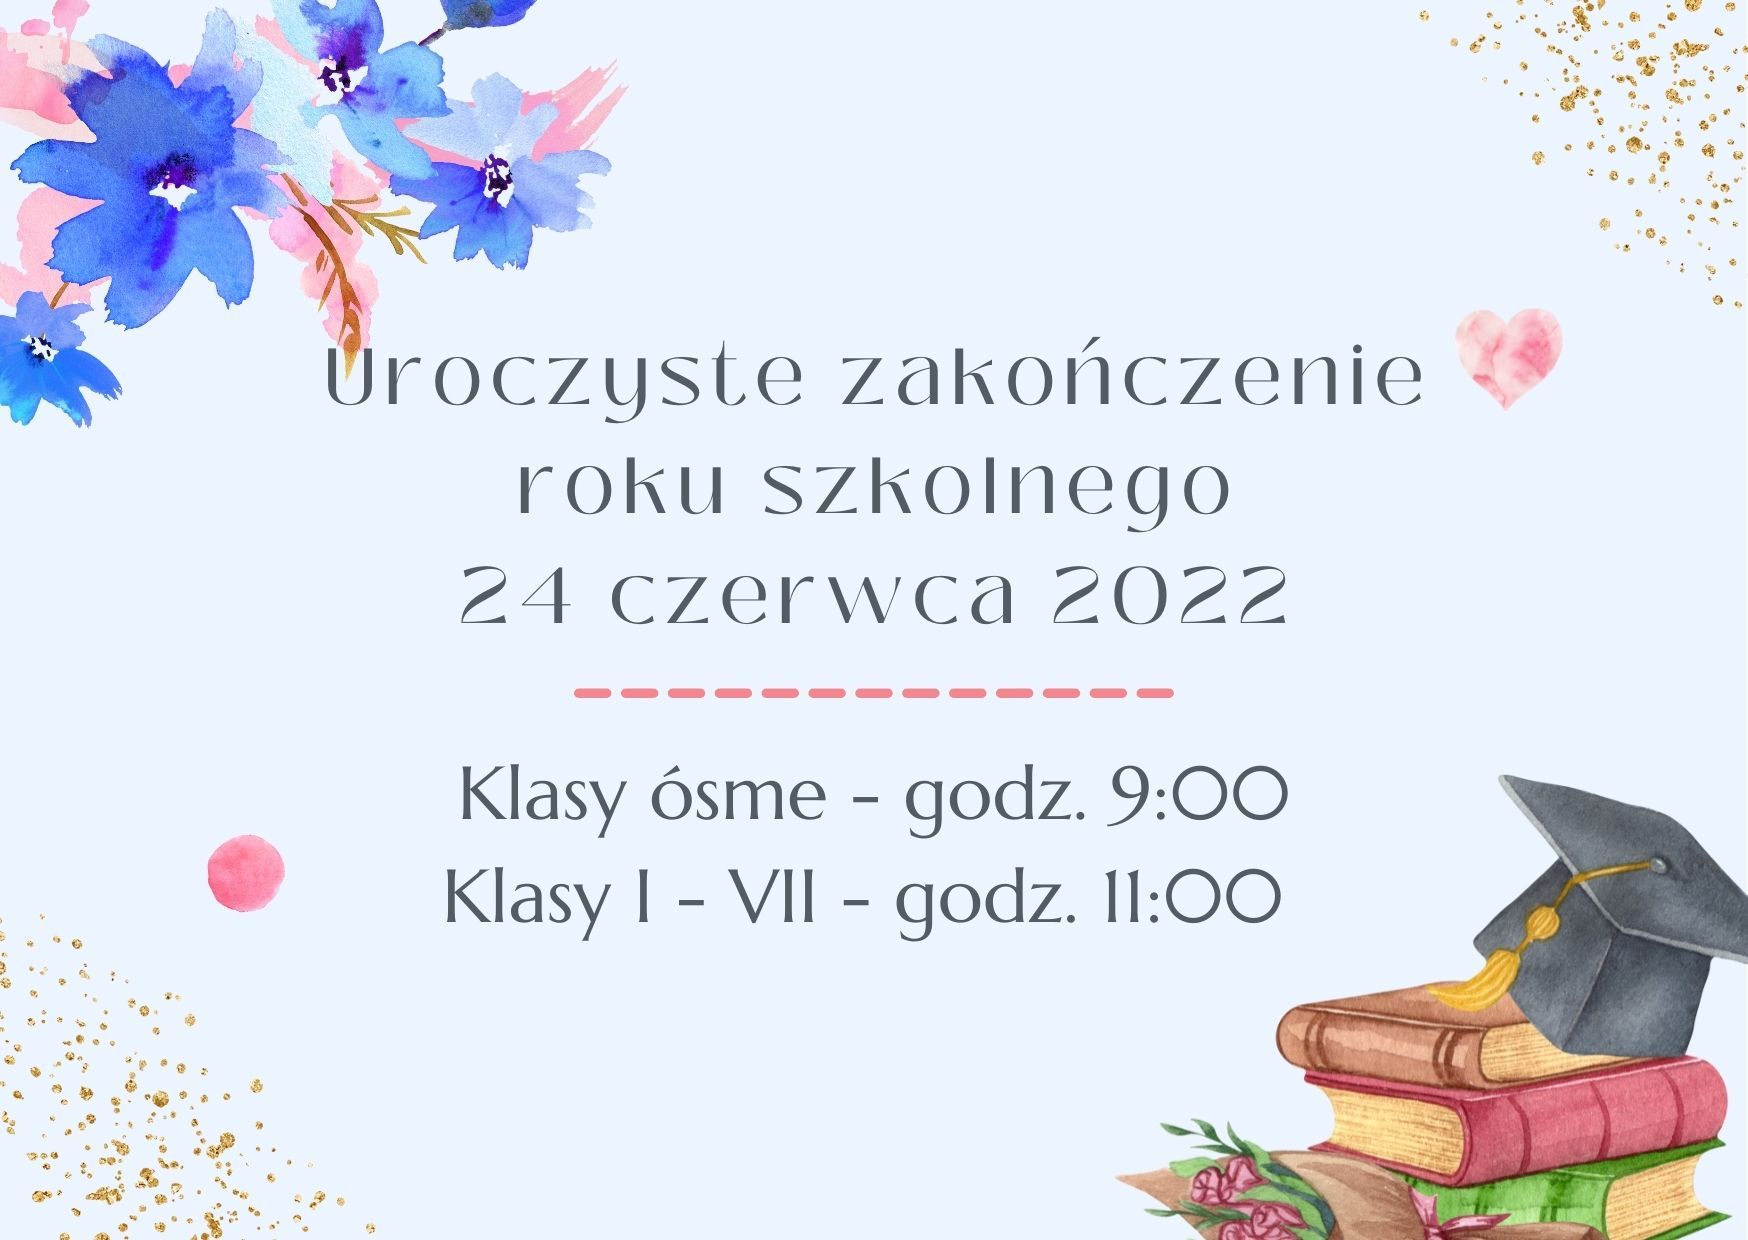 Zapraszamy na uroczystość zakończenia roku szkolnego 2021/2022